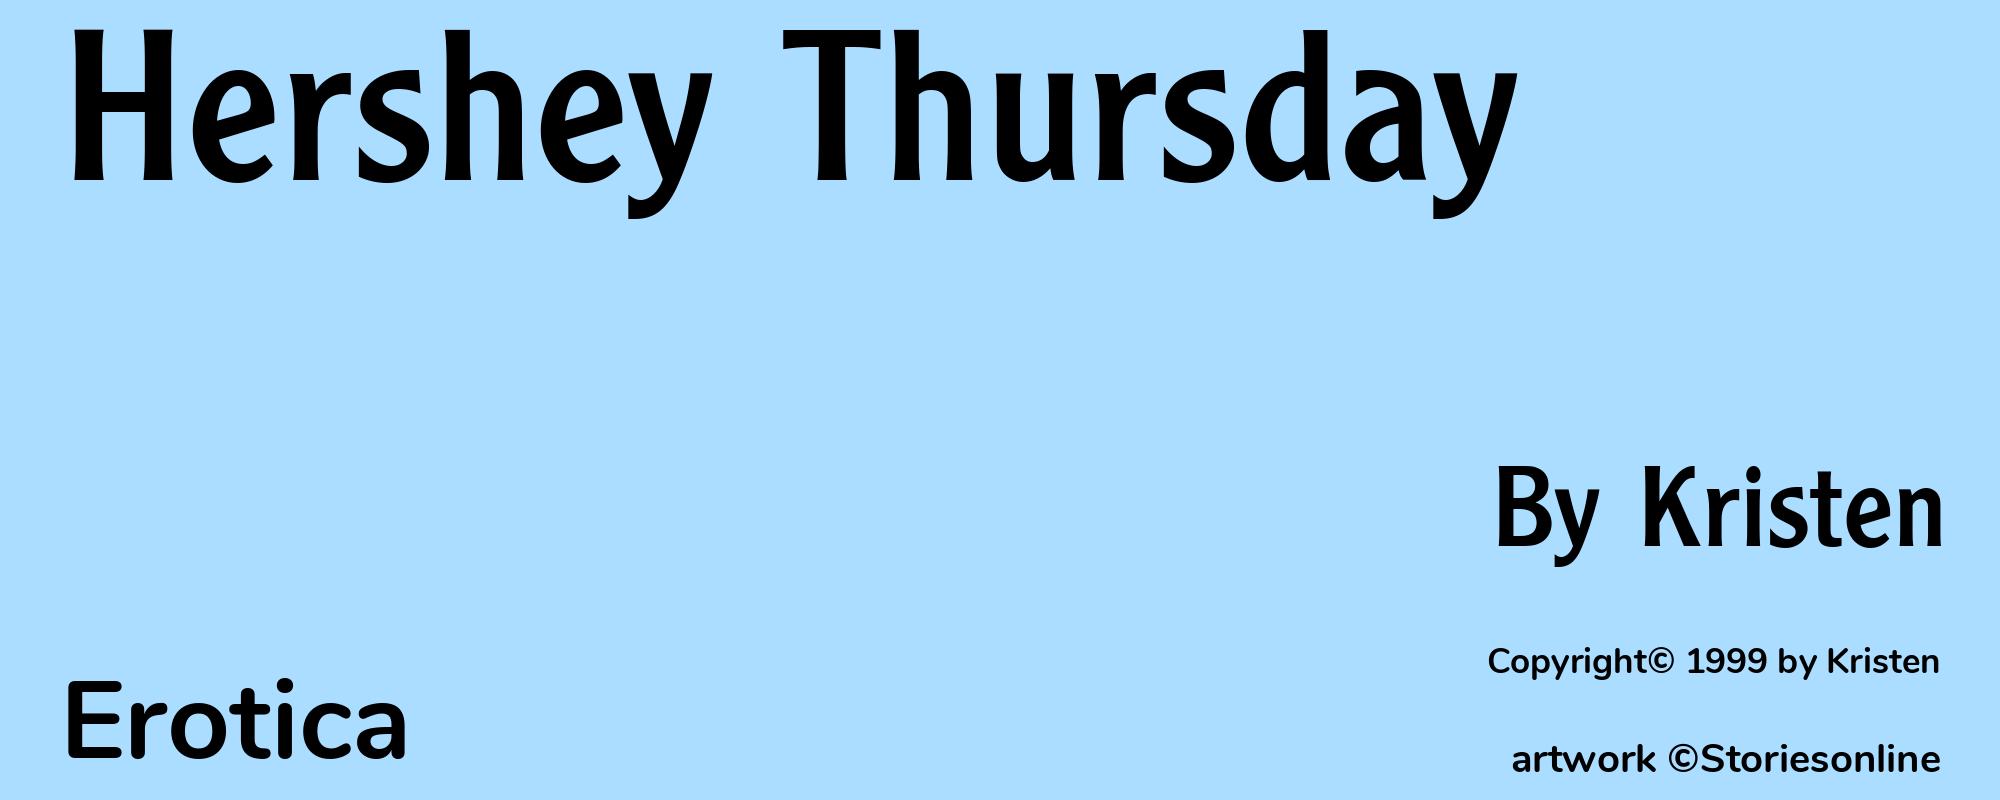 Hershey Thursday - Cover